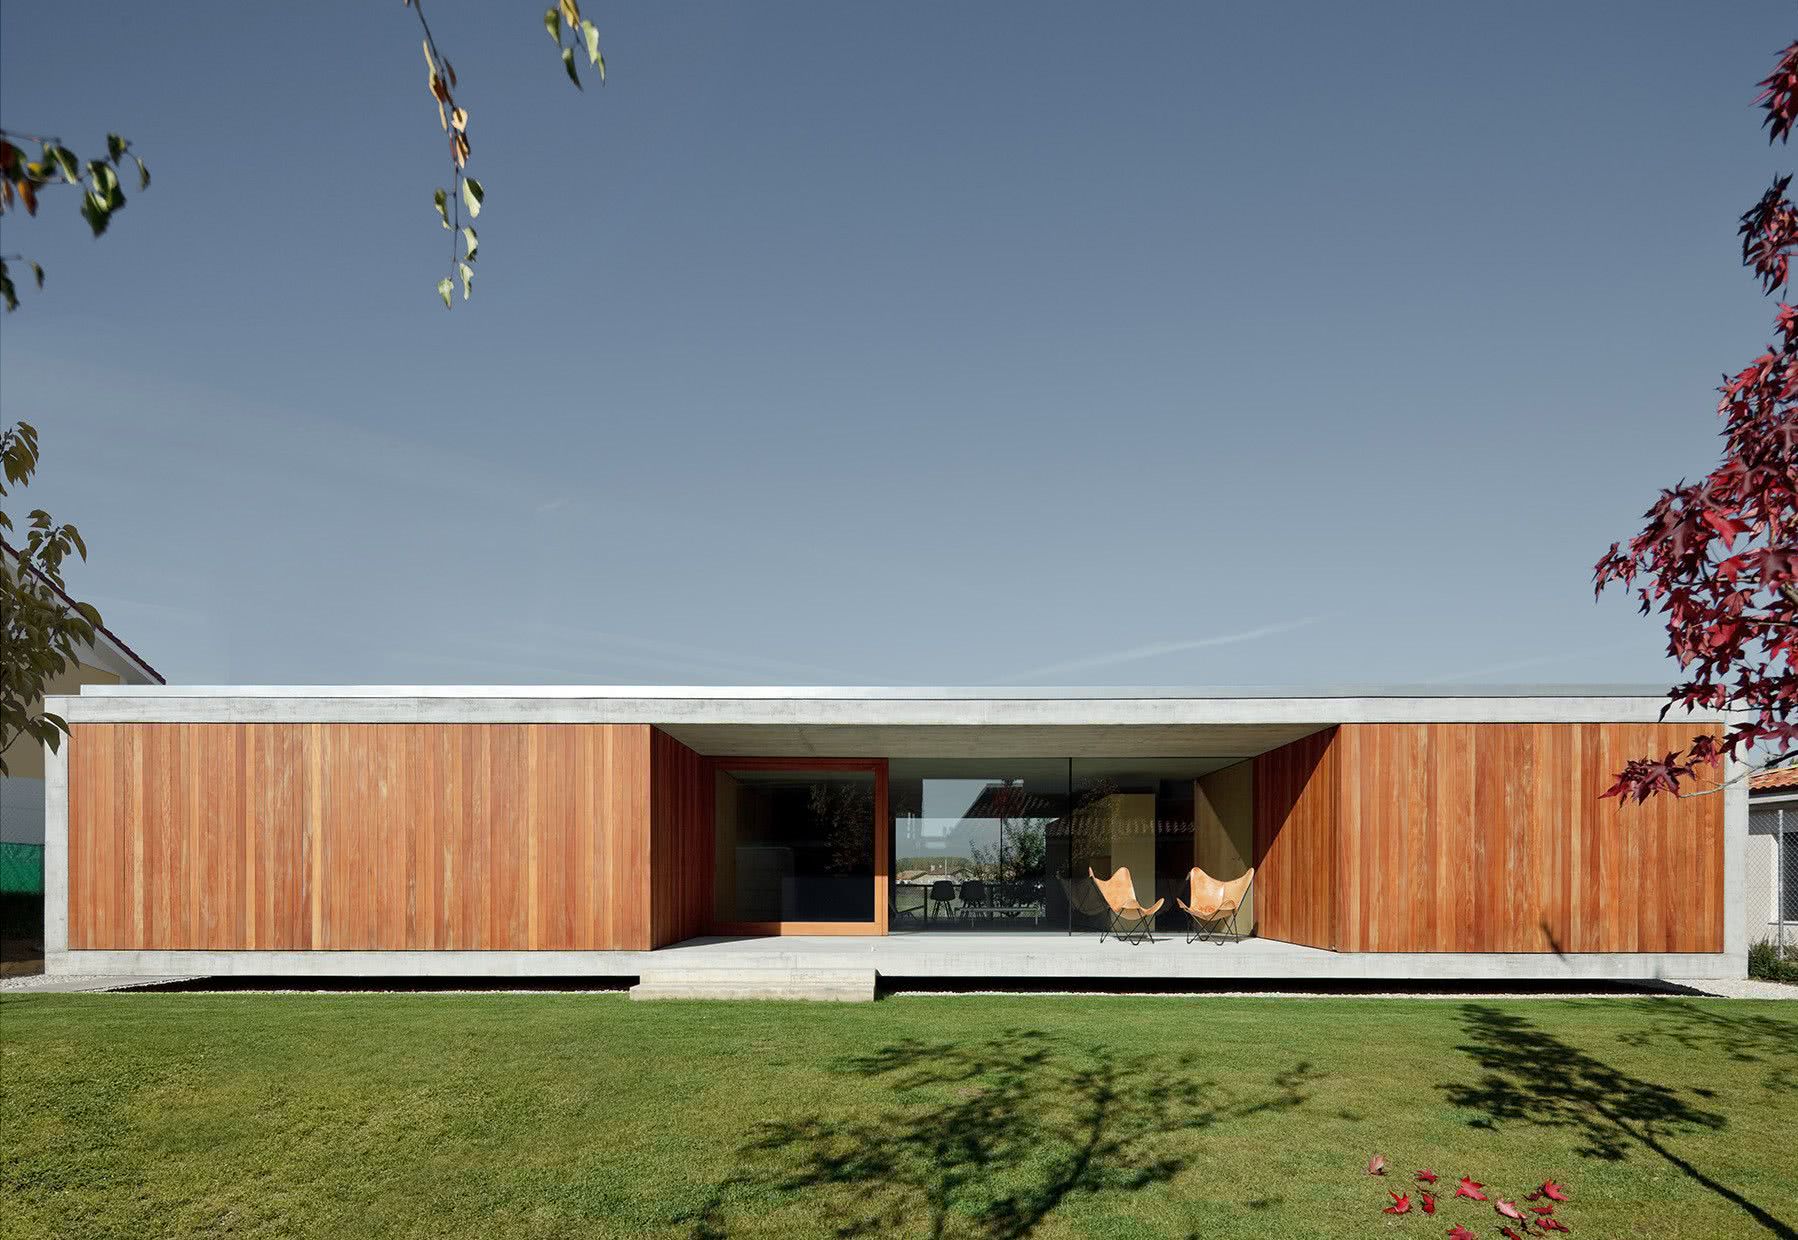  139 एकल मजली घरांचे दर्शनी भाग: प्रेरणा देण्यासाठी मॉडेल आणि फोटो